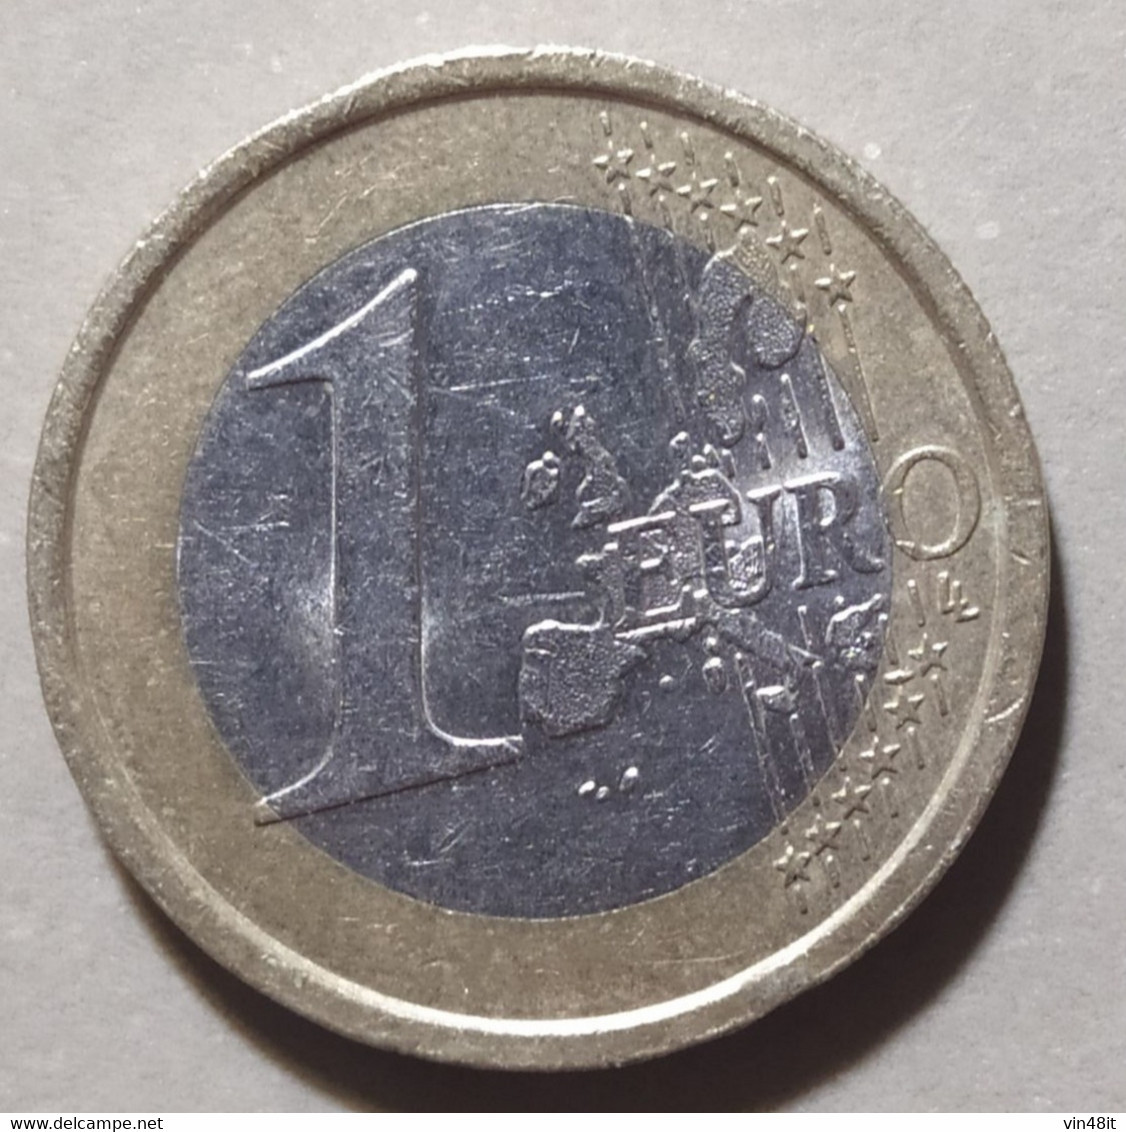 2003 - ITALIA  REPUBBLICA  - MONETA IN EURO  -  DEL VALORE DI 1  EURO - USATA - - Italie